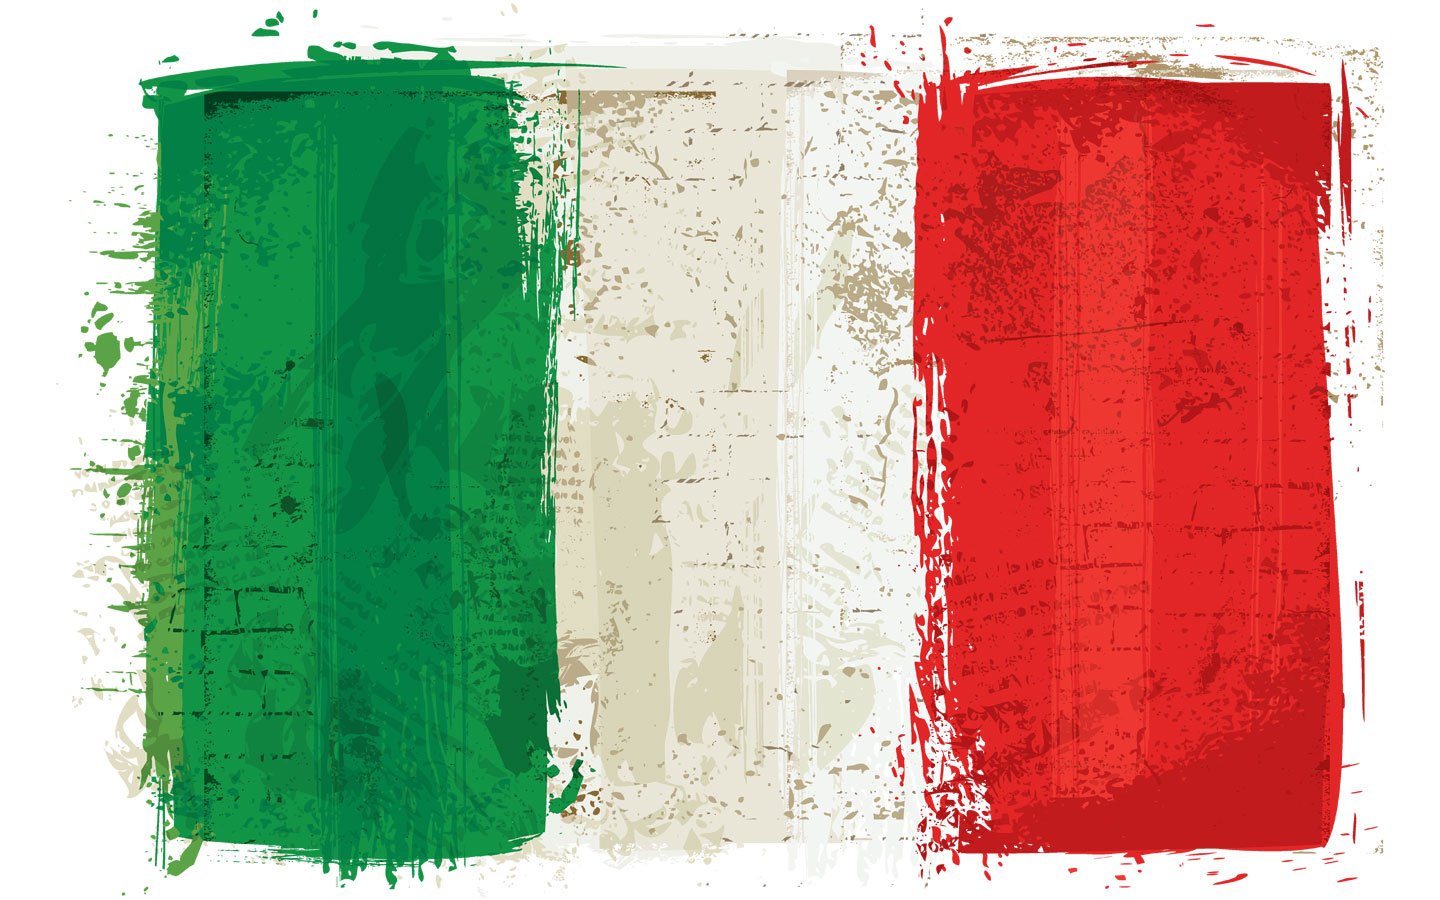 Код флага италии. Флаг Италии. Флаг Италии 1870. Флаг Италии в Италии. Флаг Италии 1914.